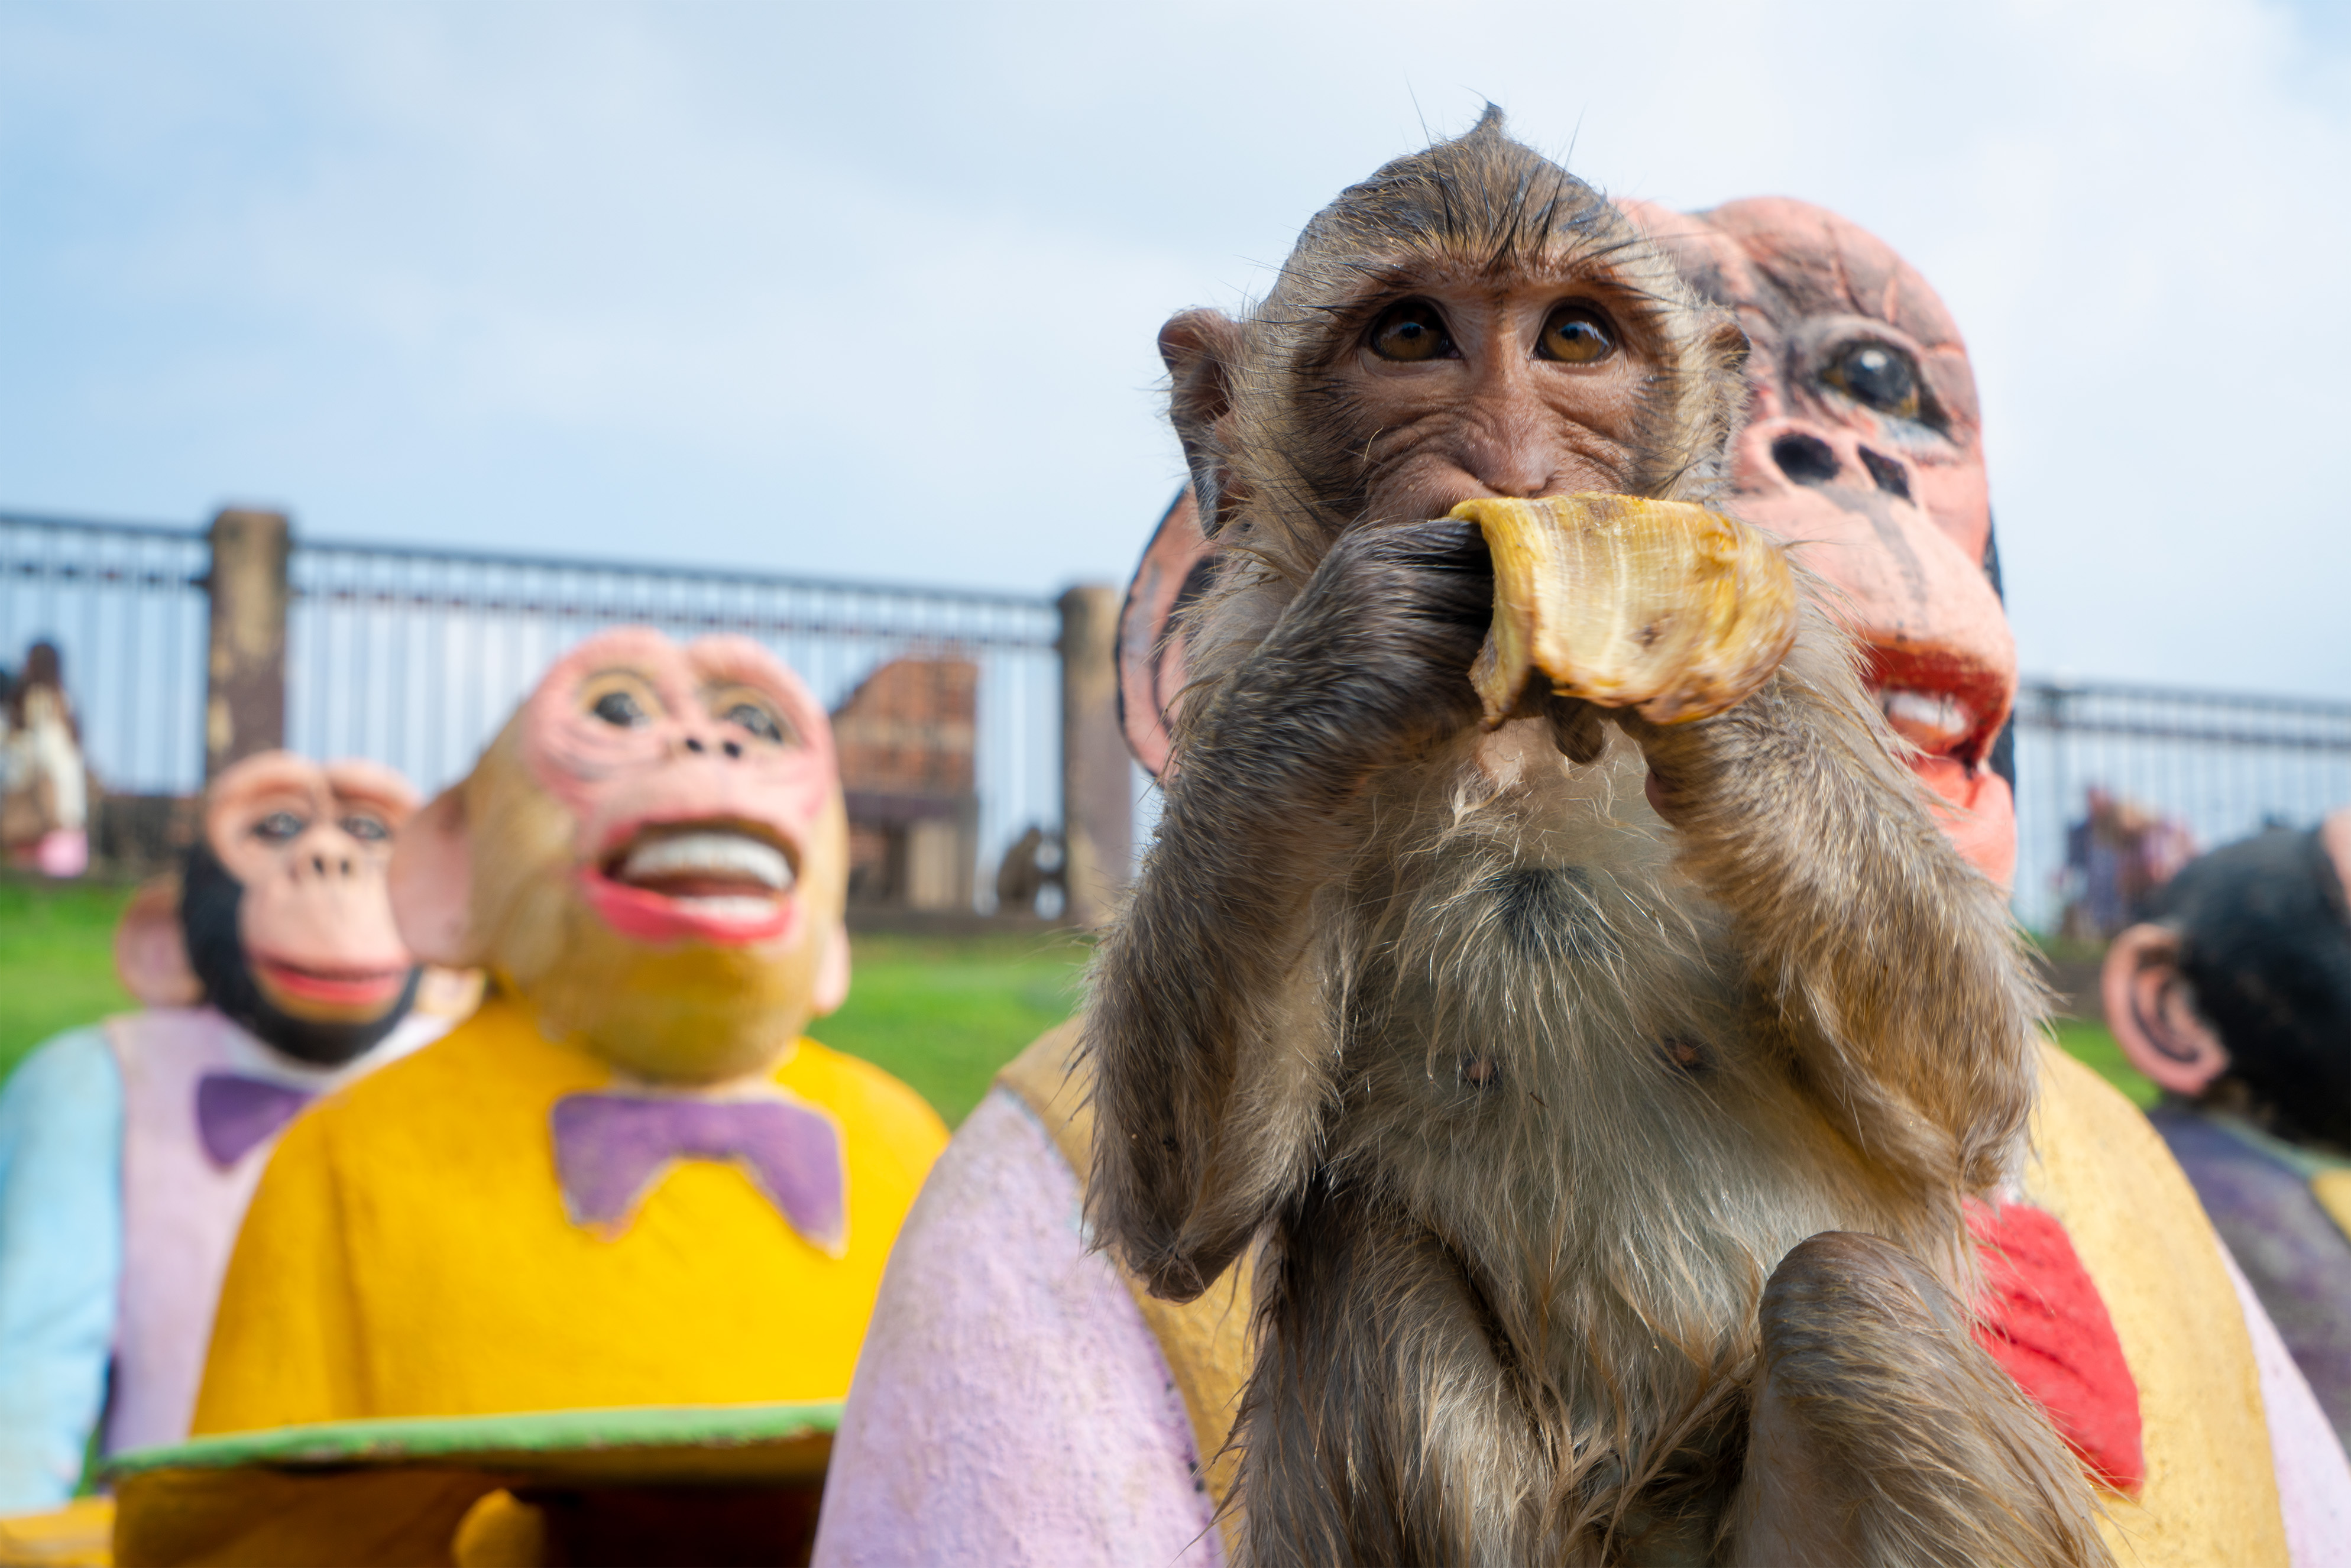 Anak monyet makan pisang di depan patung monyet.